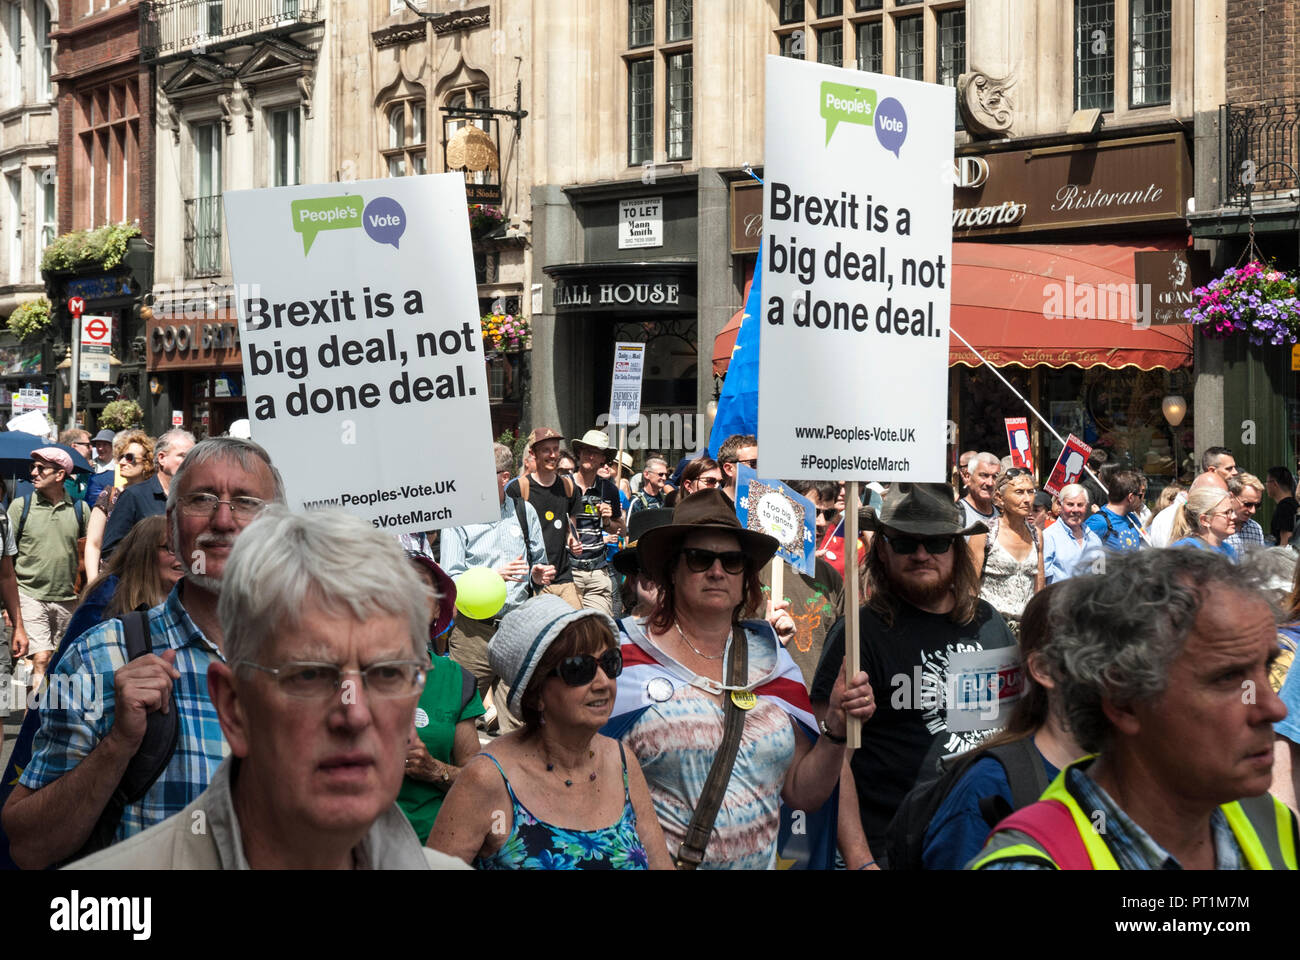 Plano amplio mostrando el rallye con dos carteles oficiales "Pueblos voto. Brexit es un gran reto, no un hecho" Foto de stock